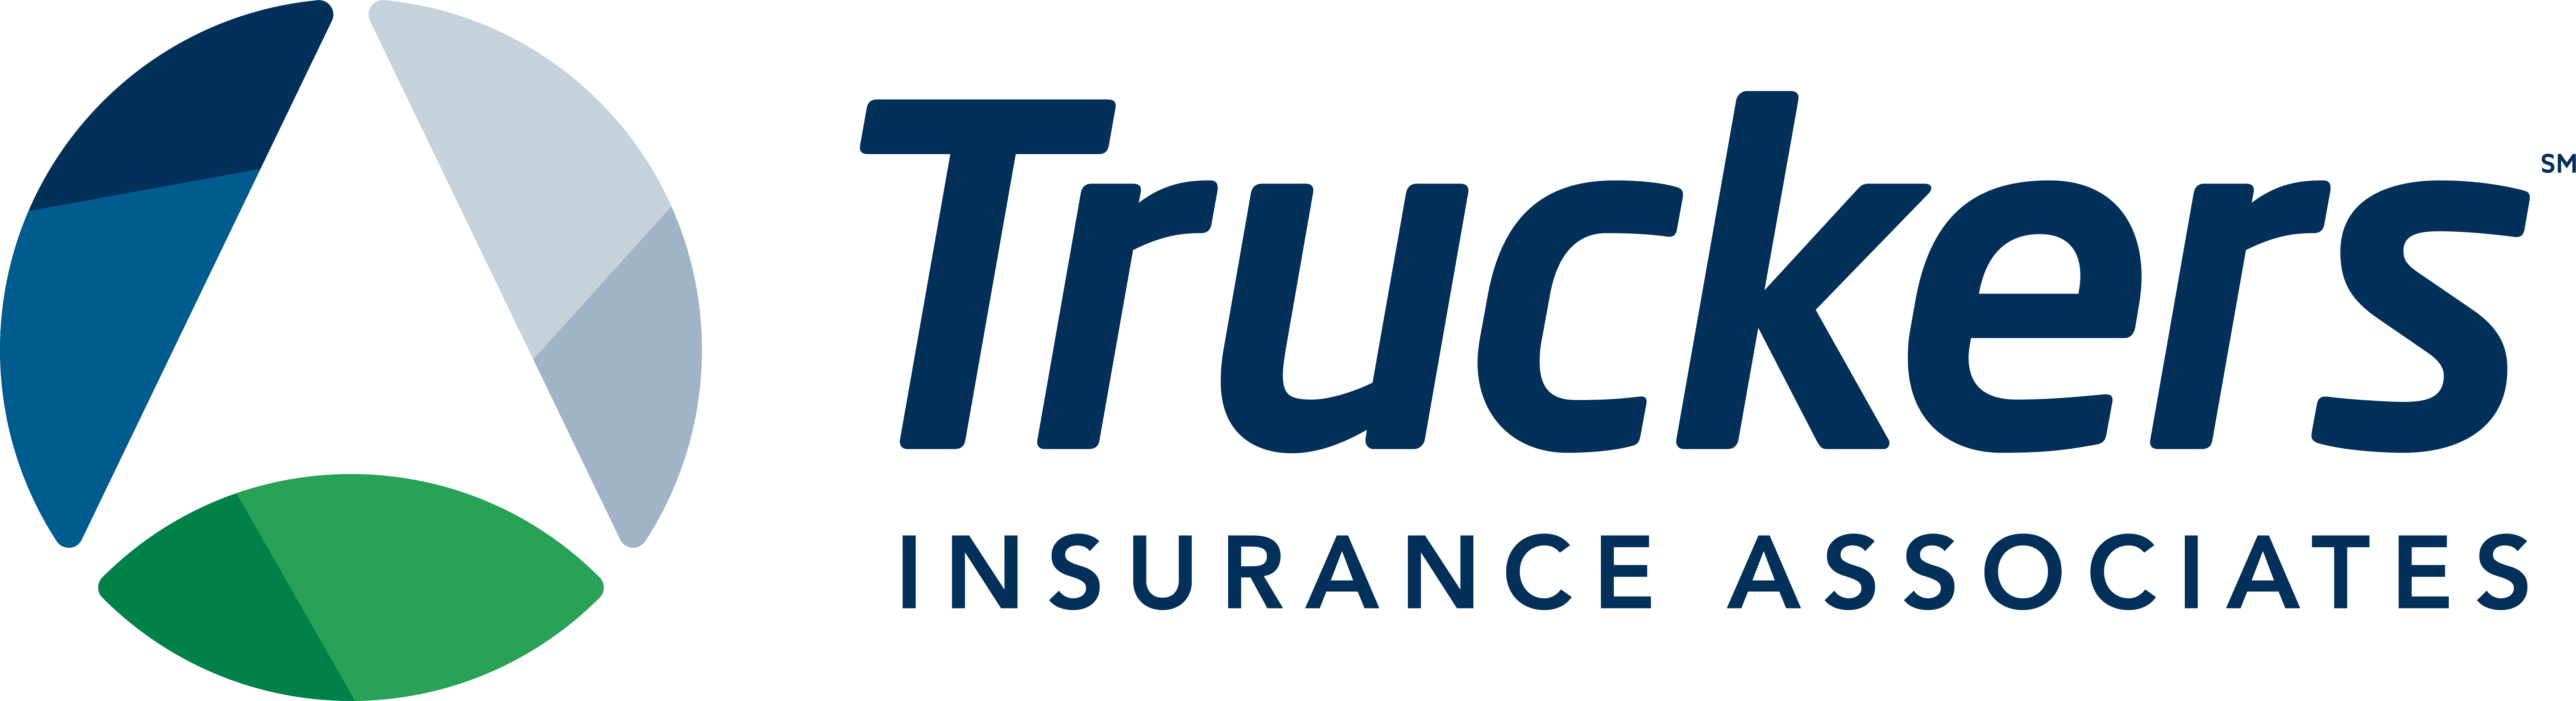 Truckers Insurance Associates Company Logo